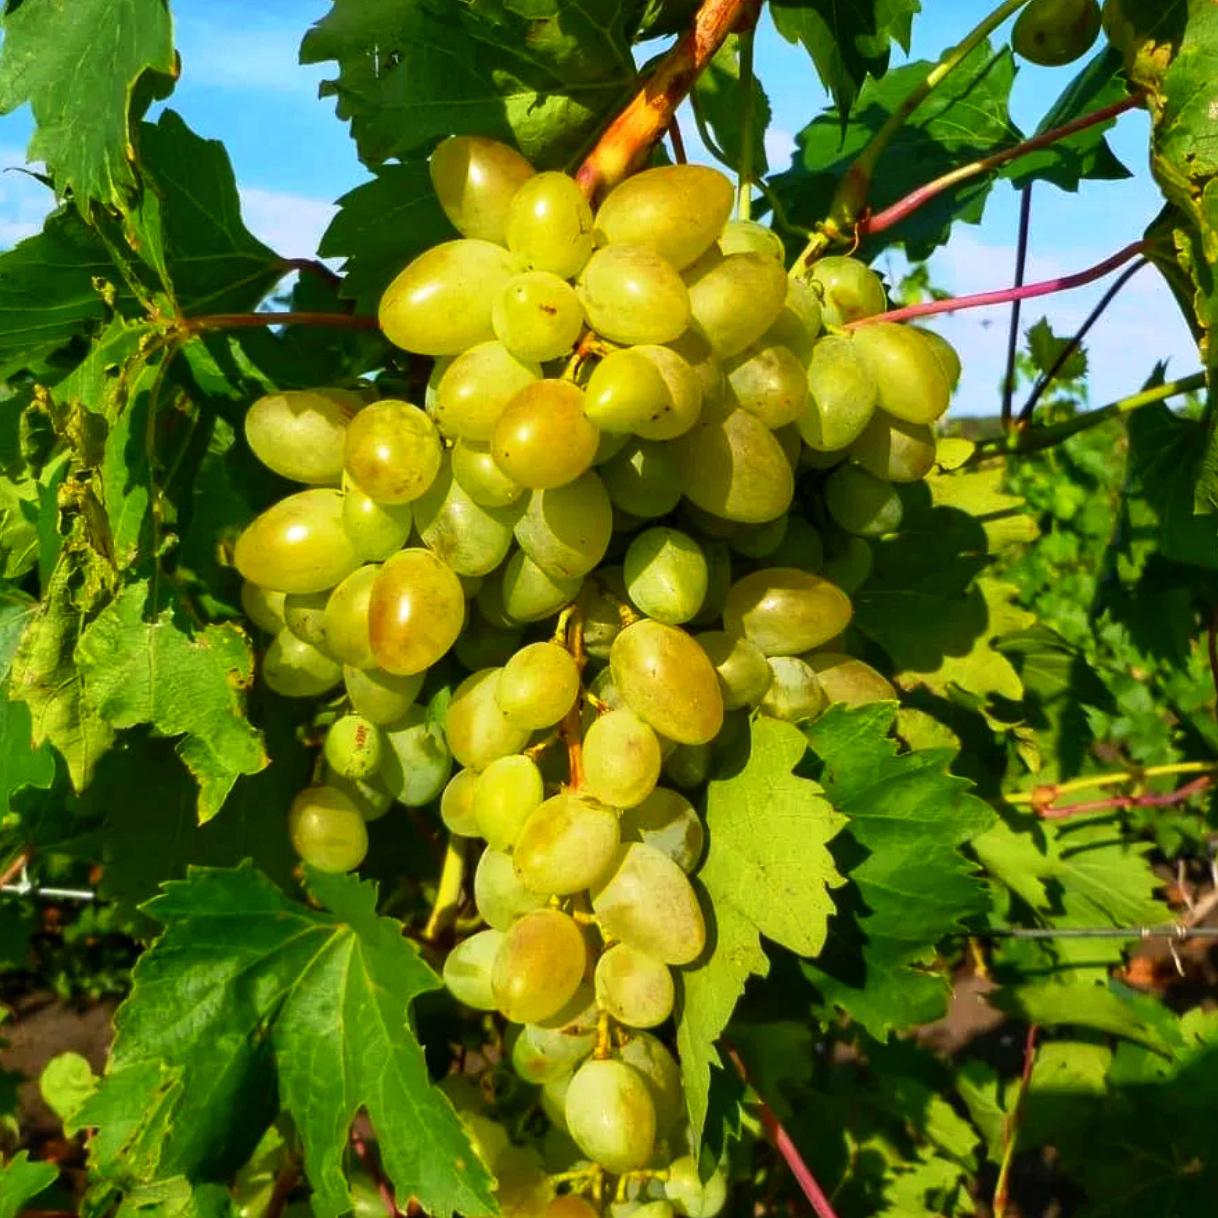 Выращиваем правильно столовый сорт винограда Аркадия